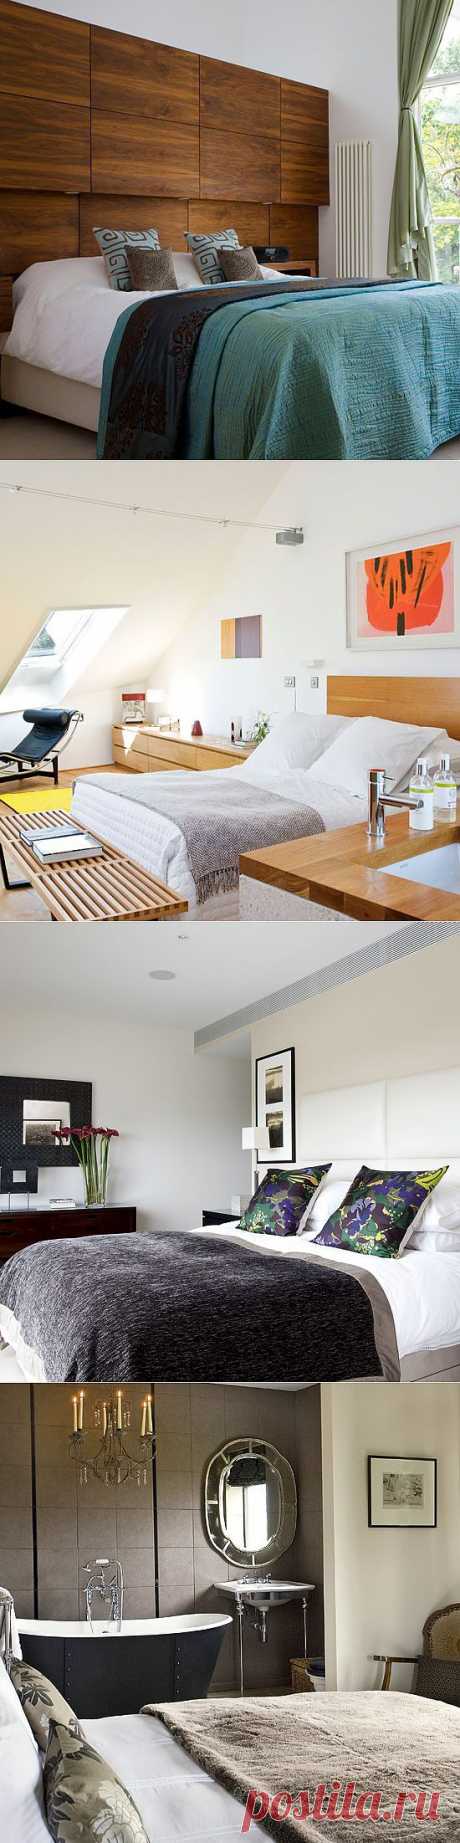 Топ 10 интерьеров спальни в стиле модерн | Дизайн интерьера | Декор своими руками